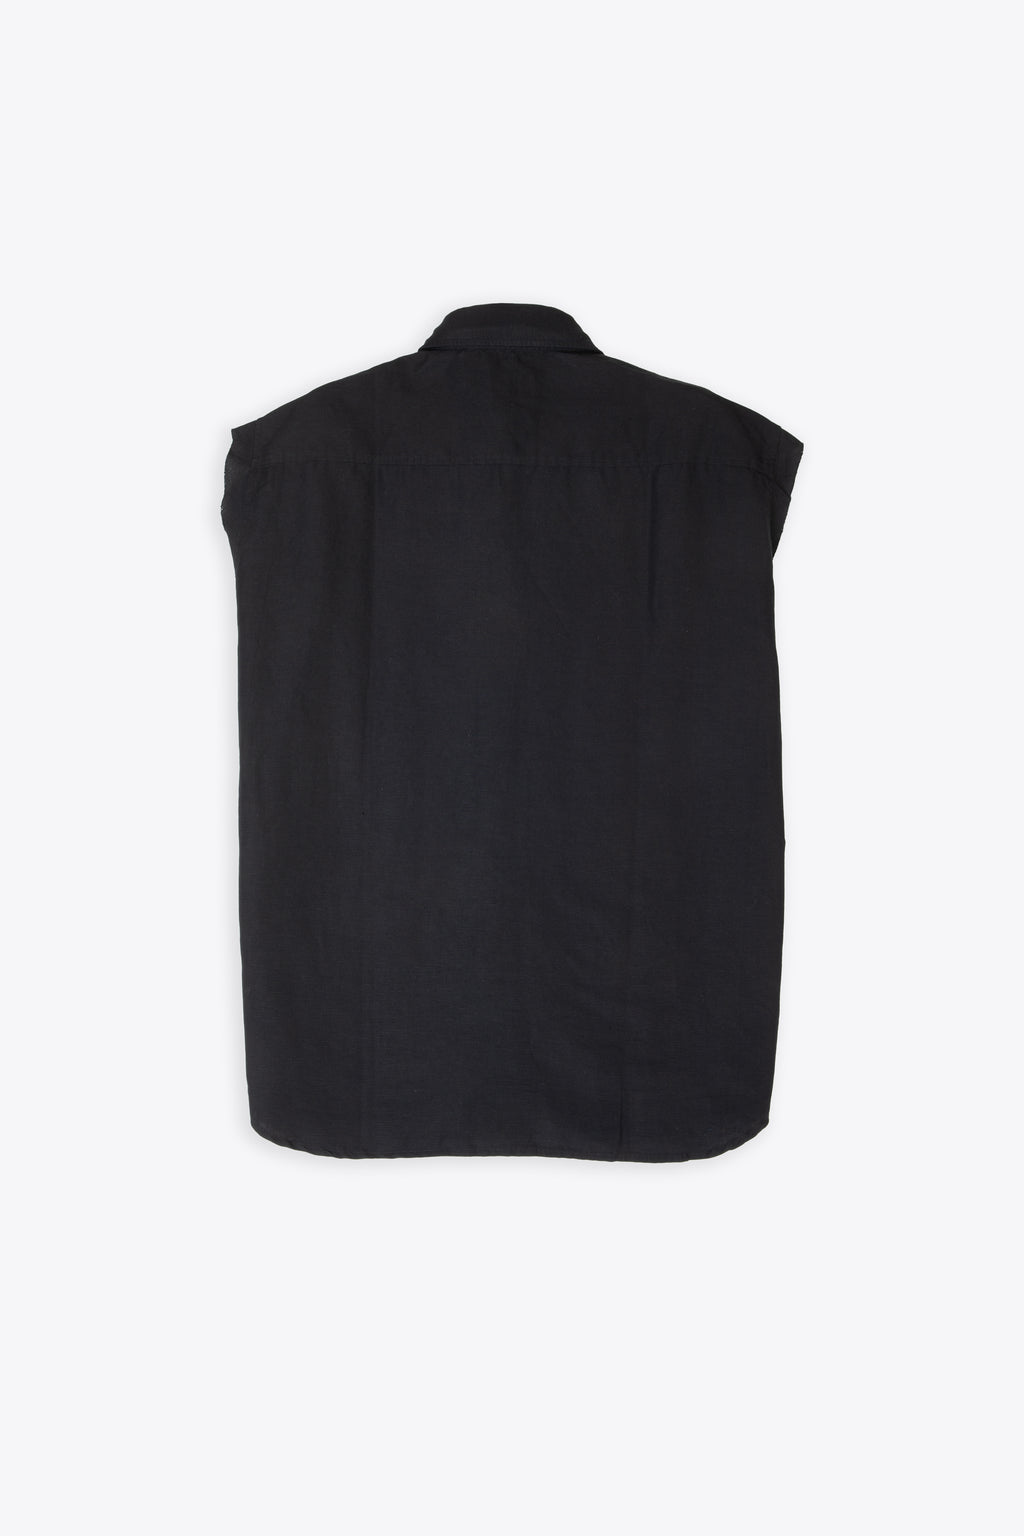 alt-image__Black-linen-blend-sleeveless-shirt---S-Simens